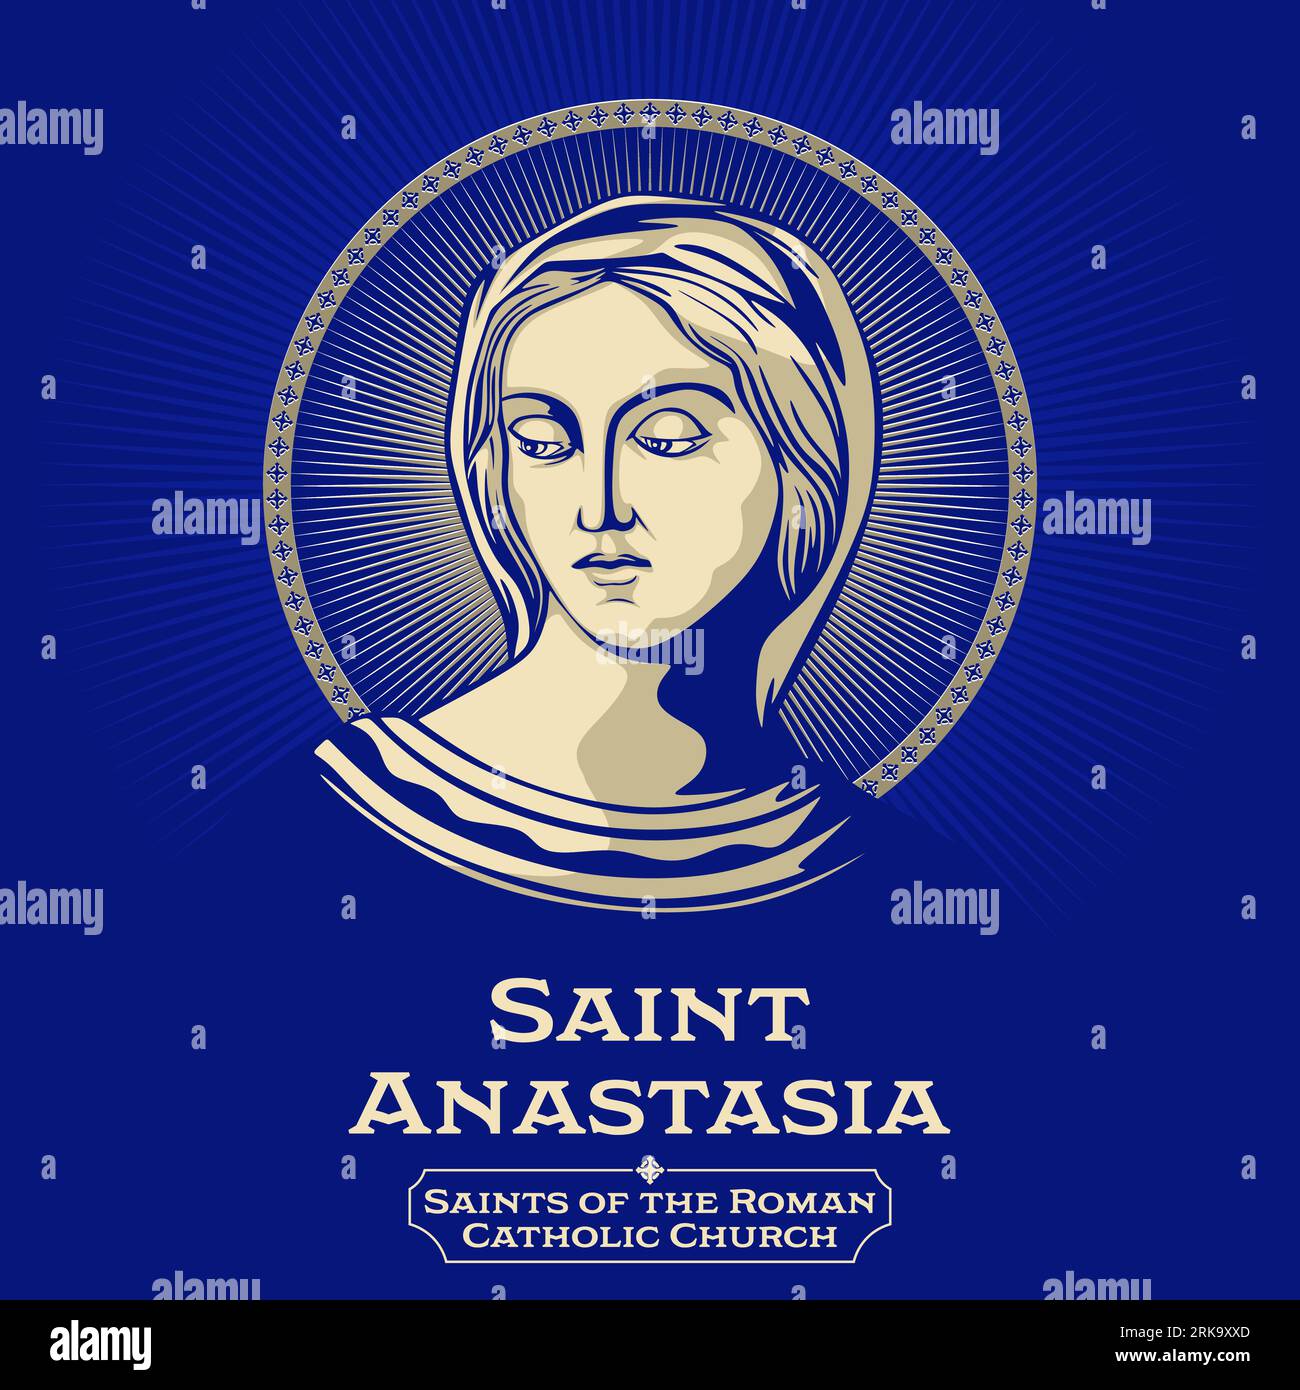 Saints catholiques. Sainte Anastasia (morte en 304) est une sainte chrétienne et martyre morte à Sirmium dans la province romaine de Pannonie Secunda. Illustration de Vecteur